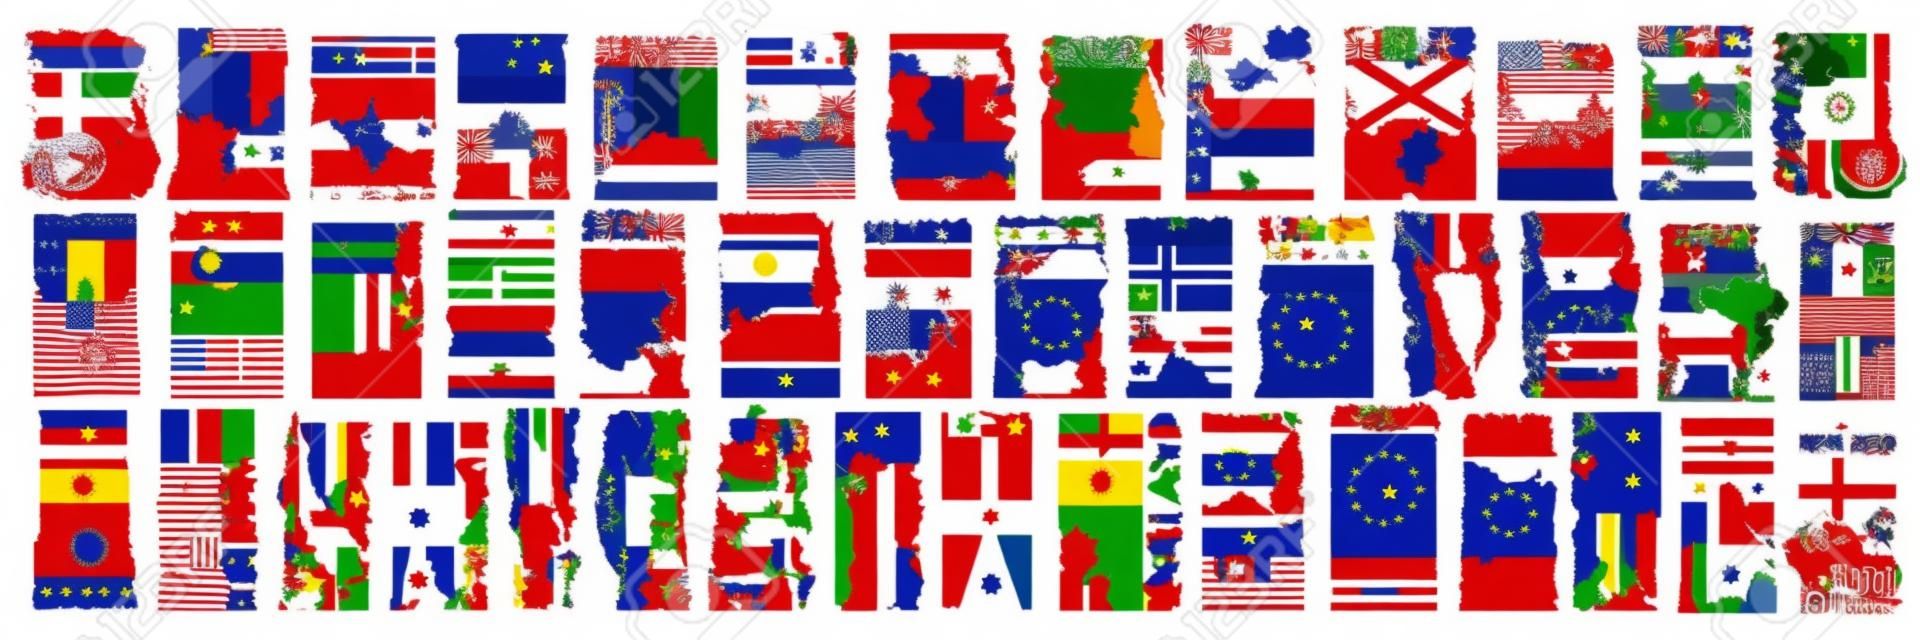 Vector conjunto de países europeos con banderas y símbolos, 43 etiquetas verticales aisladas con banderas estatales nacionales y fuente de pincel para diferentes palabras, pegatinas de diseño de arte para el día de la independencia europea.